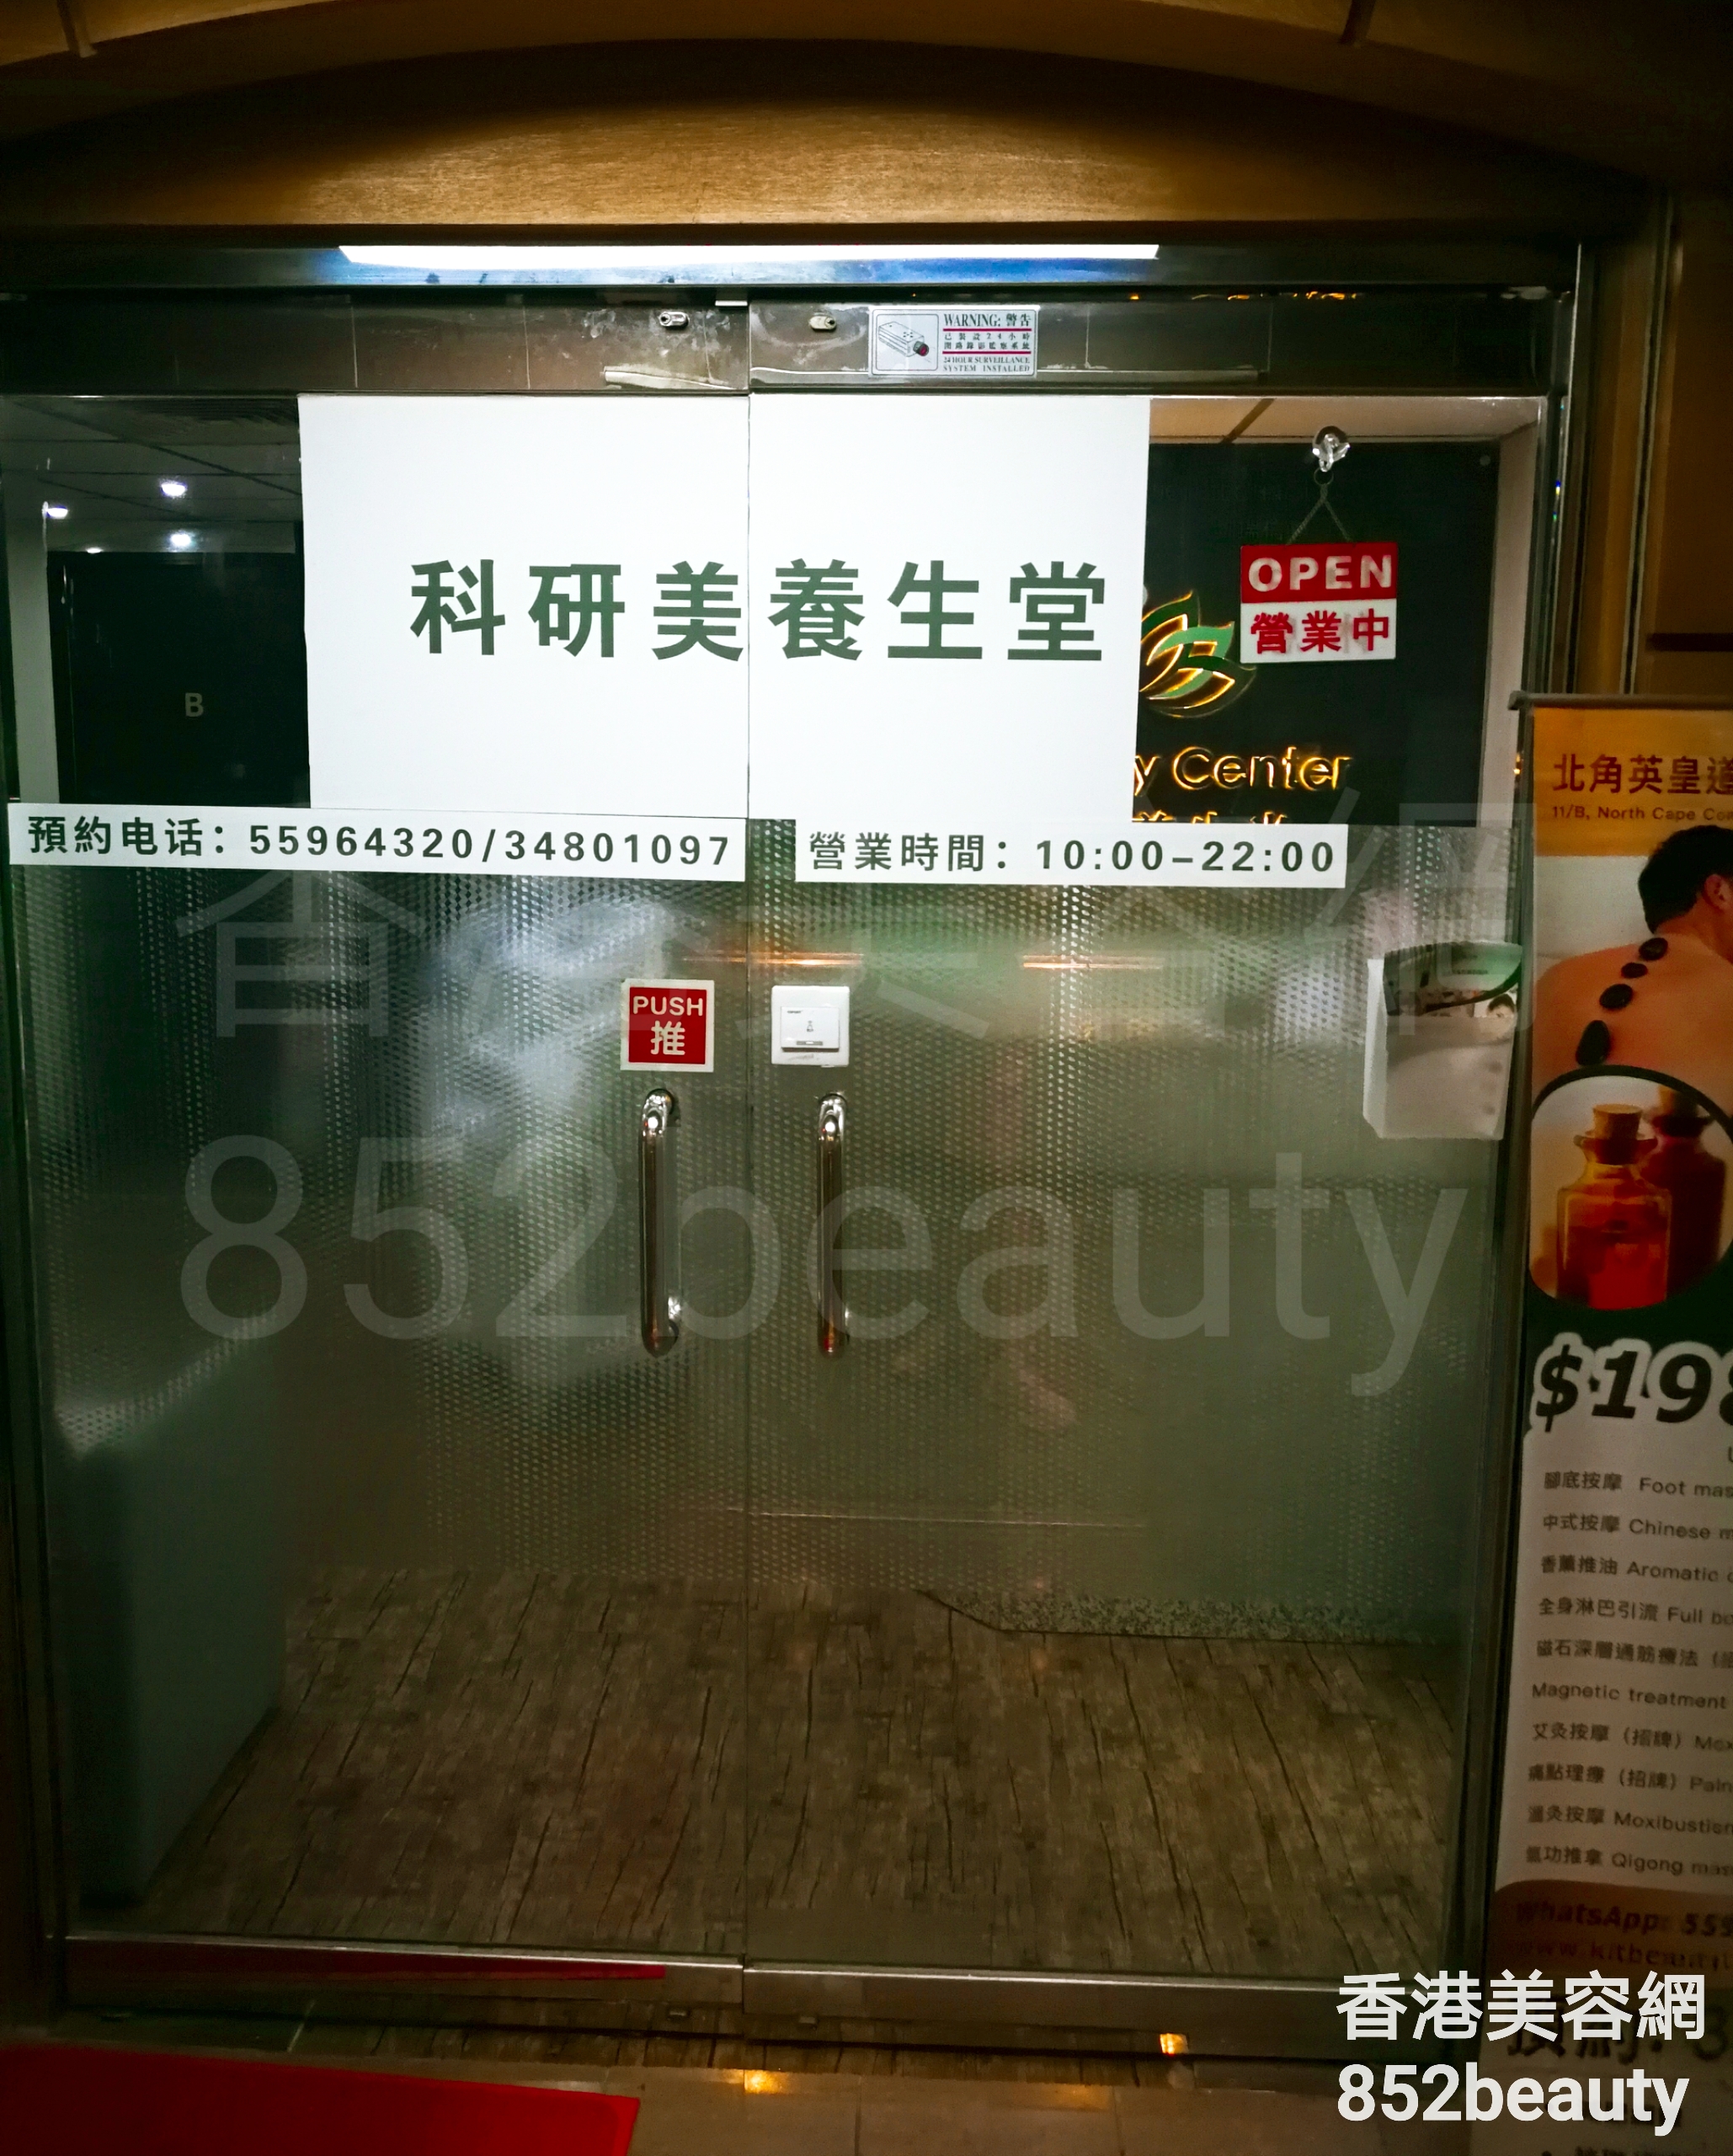 美容院 Beauty Salon: 科研美養生堂